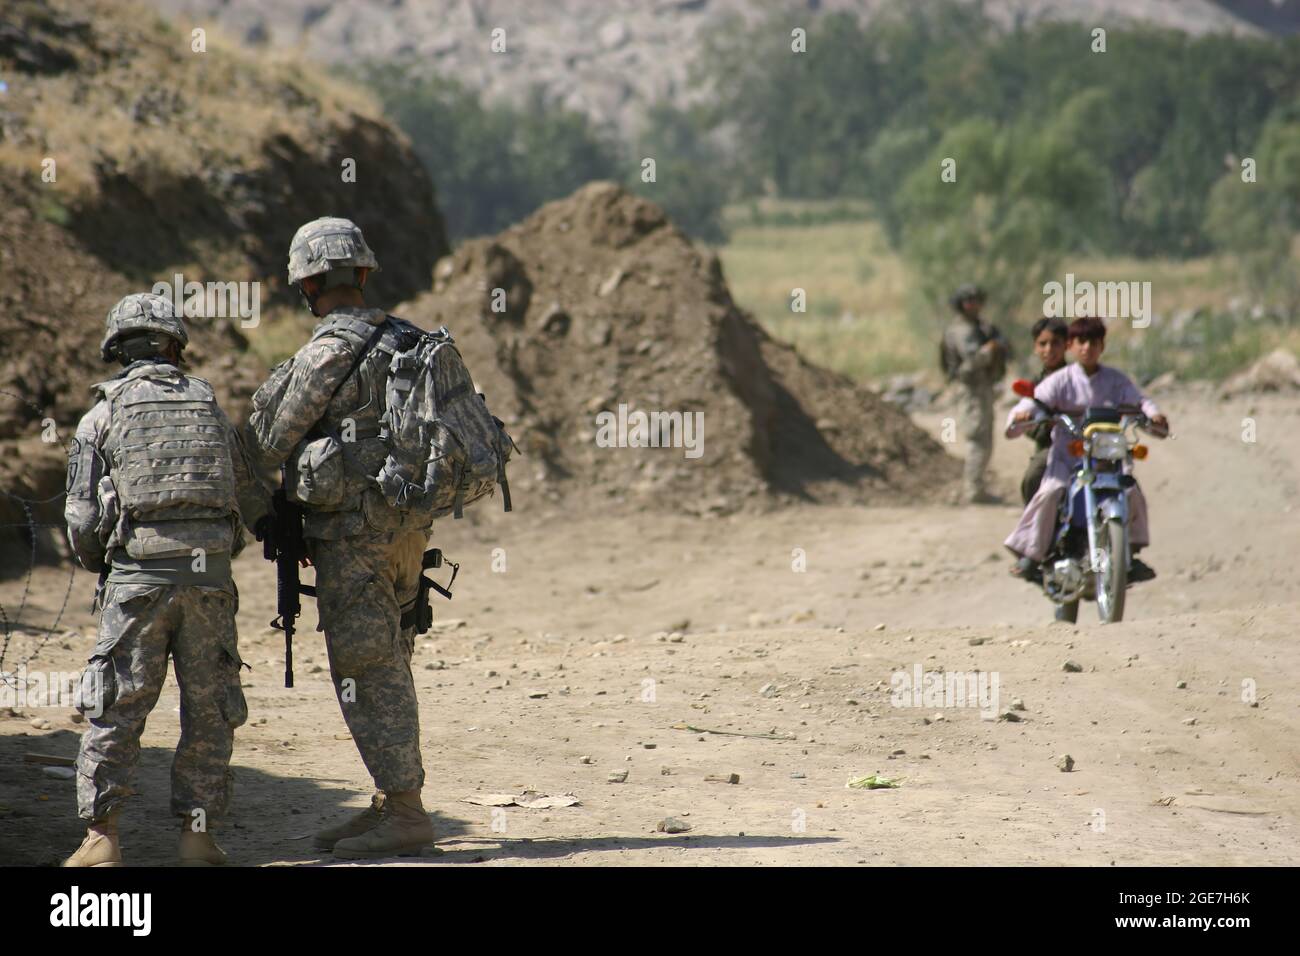 US-Kampftruppen in Afghanistan - zwei Soldaten, die 1-221 Kavalleriegeschwader, Nevada Nationalgarde, zugewiesen sind, beobachten zwei afghanische Jungen auf einem Fahrrad, wie sie einen Militärkontrollpunkt vor dem Kampfposten Najil in der Provinz Laghman, Afghanistan, passieren 29. September 2009. Die 1-221 verbrachten während der serge 2009 neun Monate in Afghanistan, die der Task Force Mountain Warrior angehängt waren. (USA Army Photo von SPC. Walter H. Lowell) Stockfoto